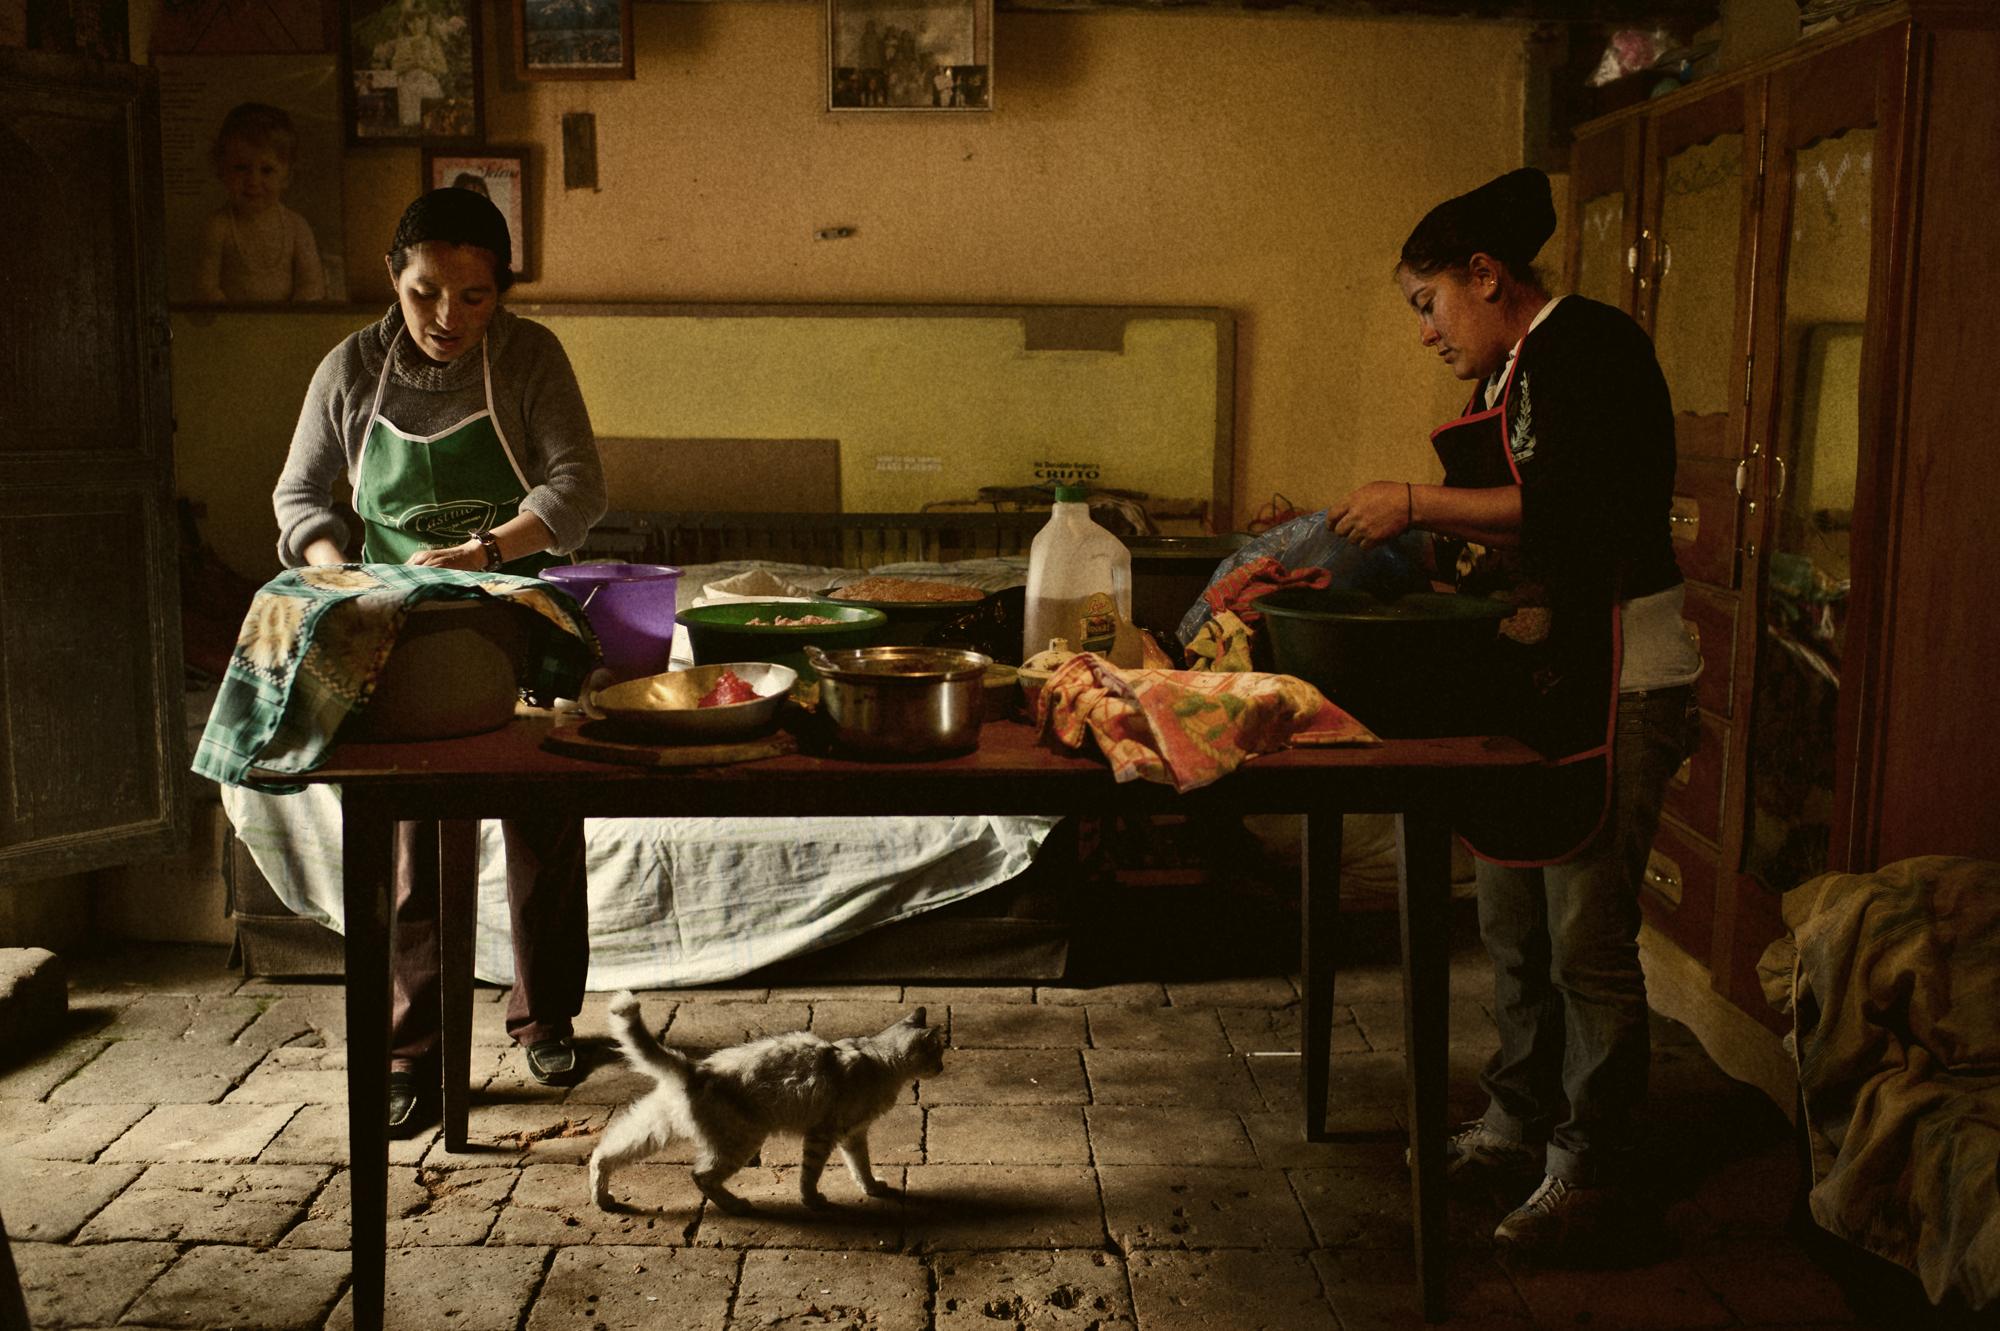 Microcredit / Guatemala - Quetzaltenango, Pueblo Nuevo, Guatemala. September 2011...